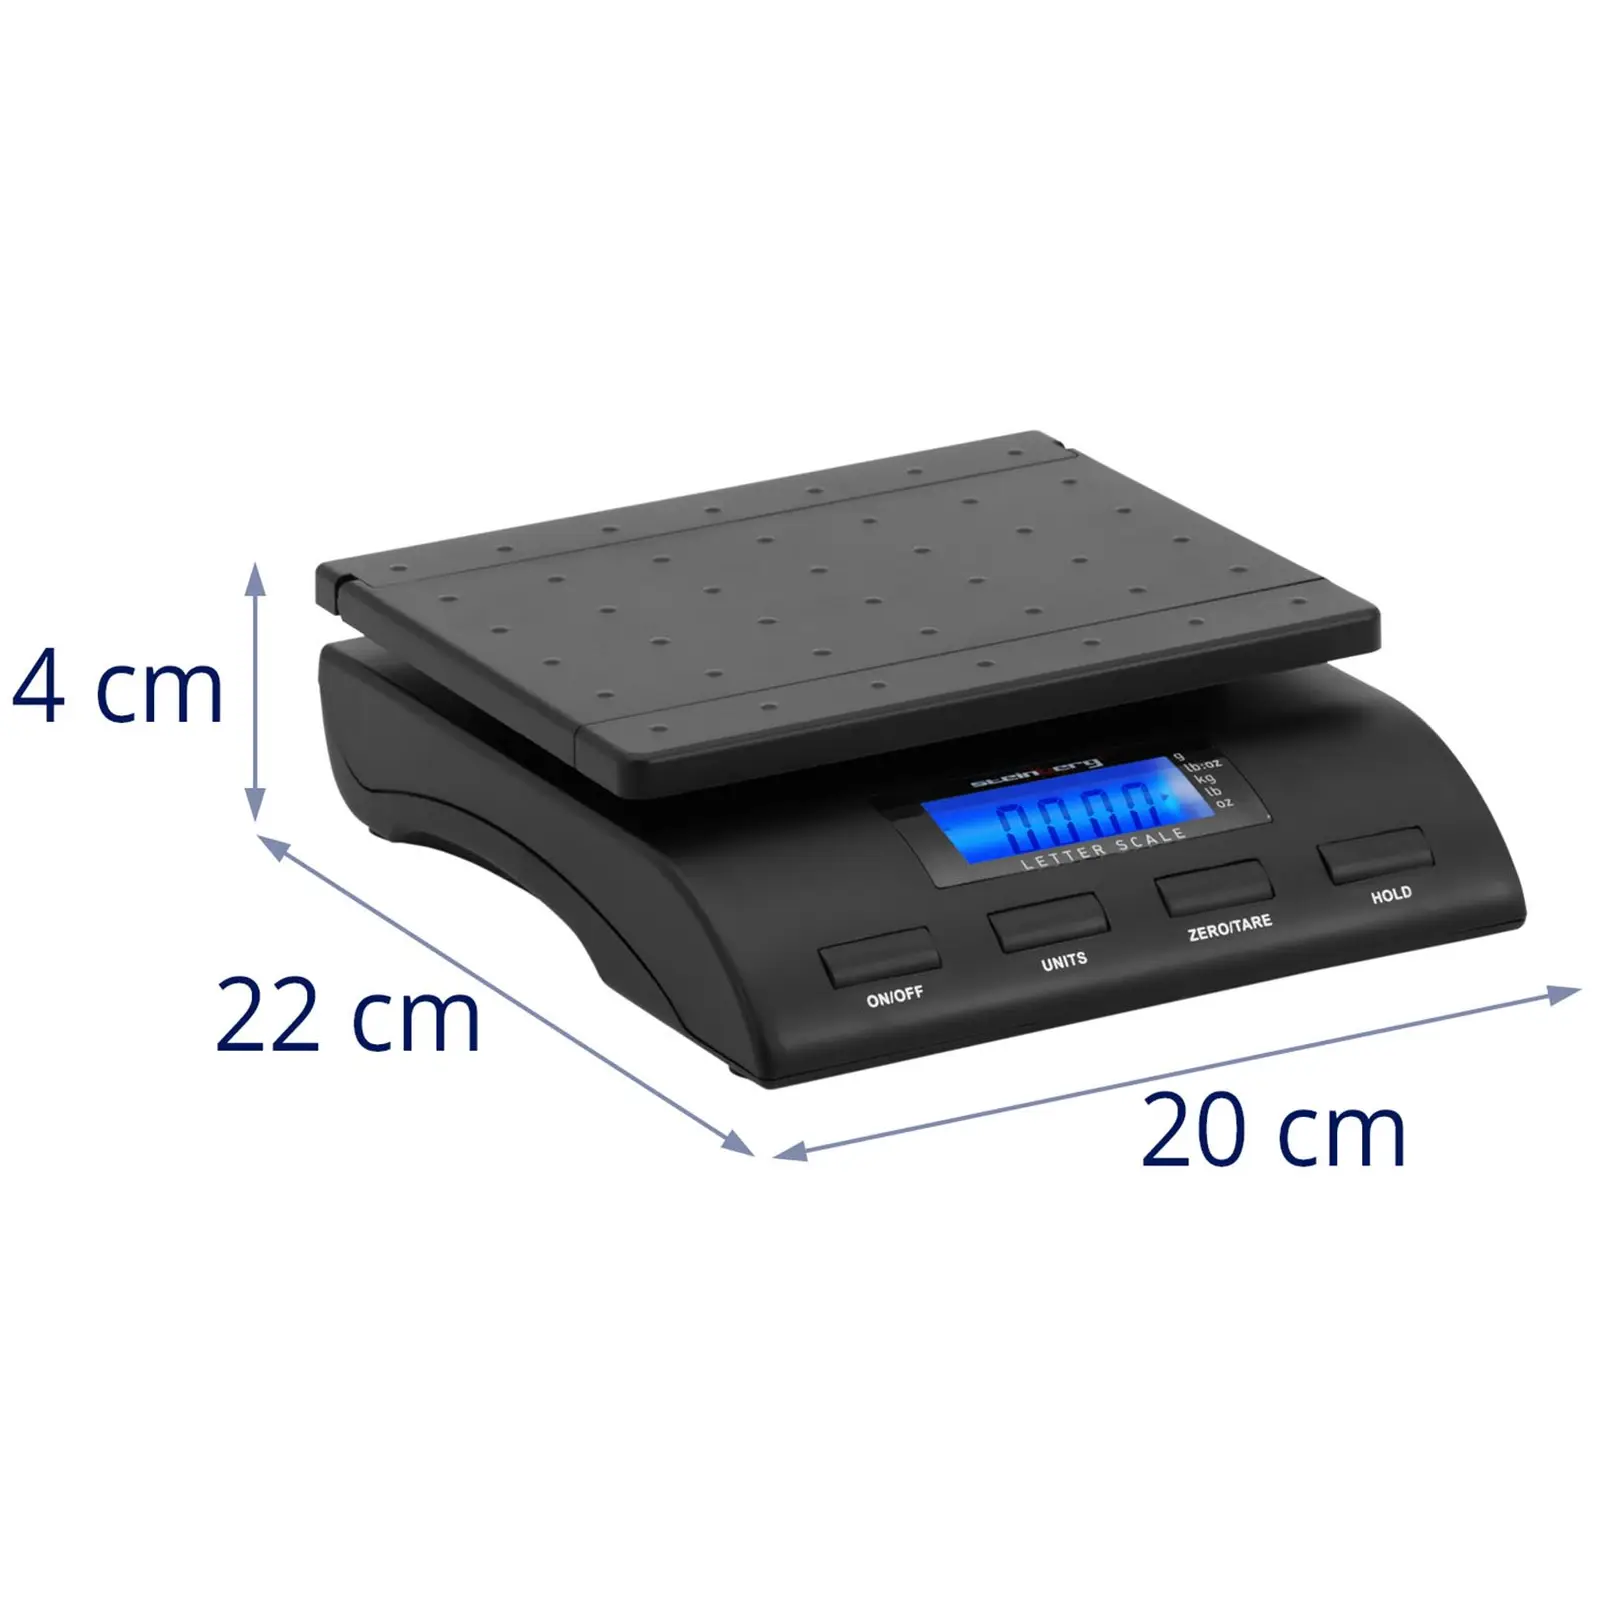 Digital Letter Scale - 40 kg / 5 g